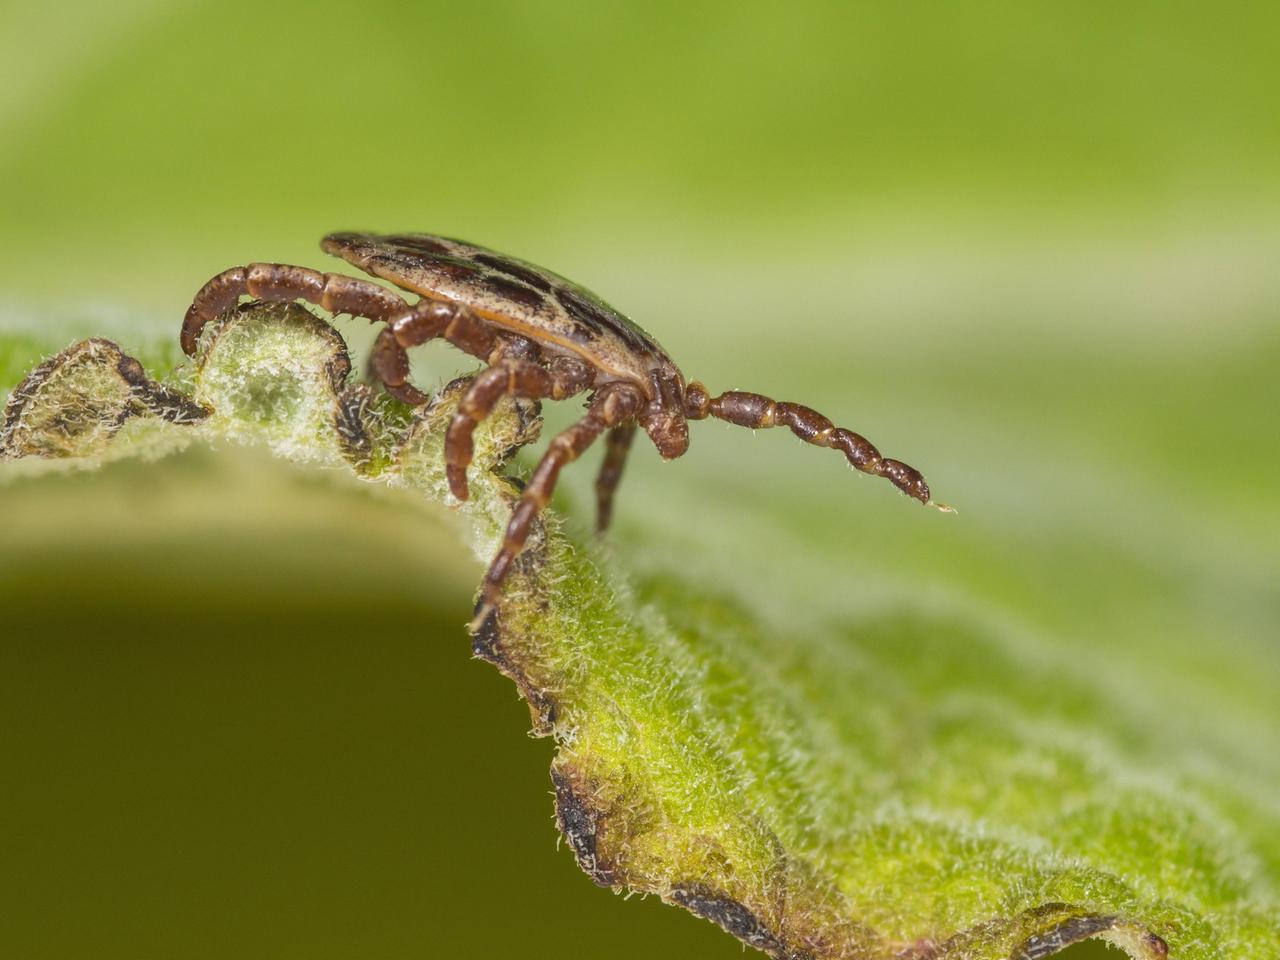 Eine Seitenansicht einer männlichen Auwaldzecke (Dermacentor reticulatus), die auf einem Blatt sitzt.